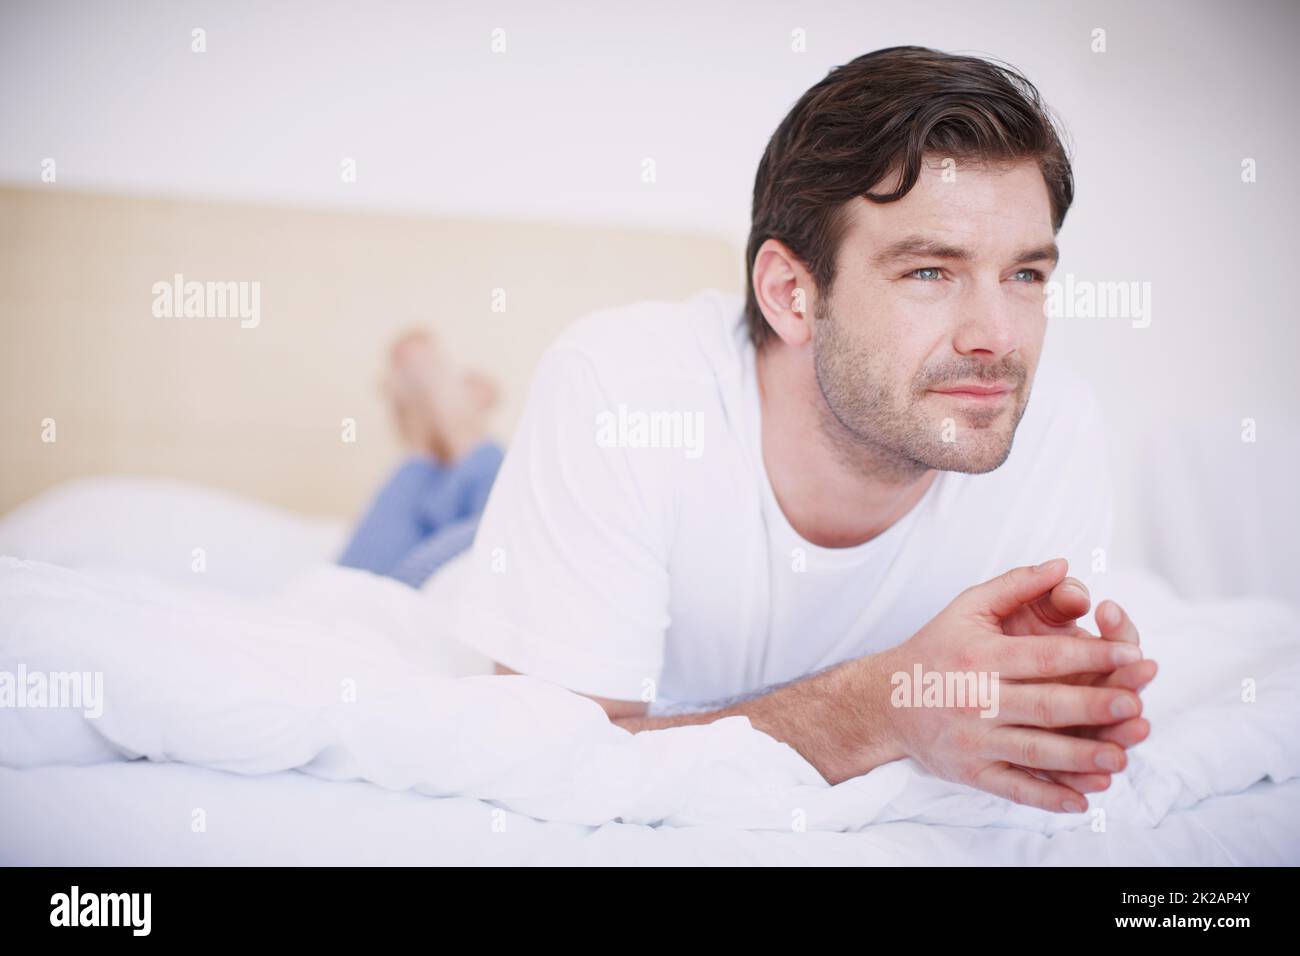 Denken wir über einige Dinge nach Ein hübscher junger Mann, der auf seinem Bauch auf einem Bett liegt und nachdenklich aussieht. Stockfoto